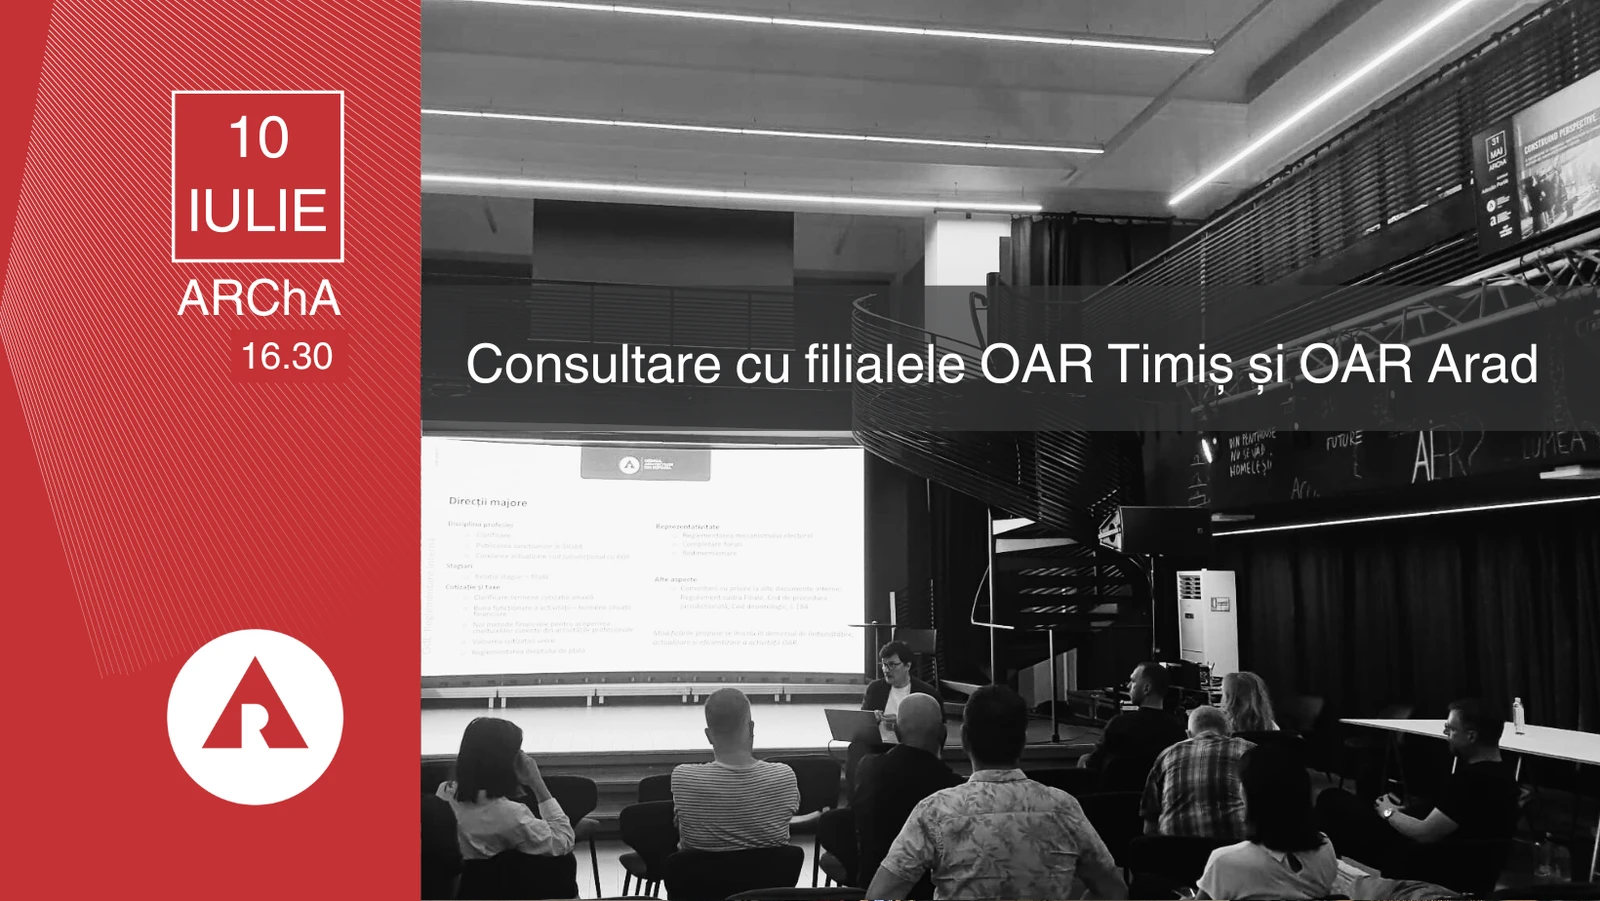 Consultare cu filialele OAR Timiș și OAR Arad